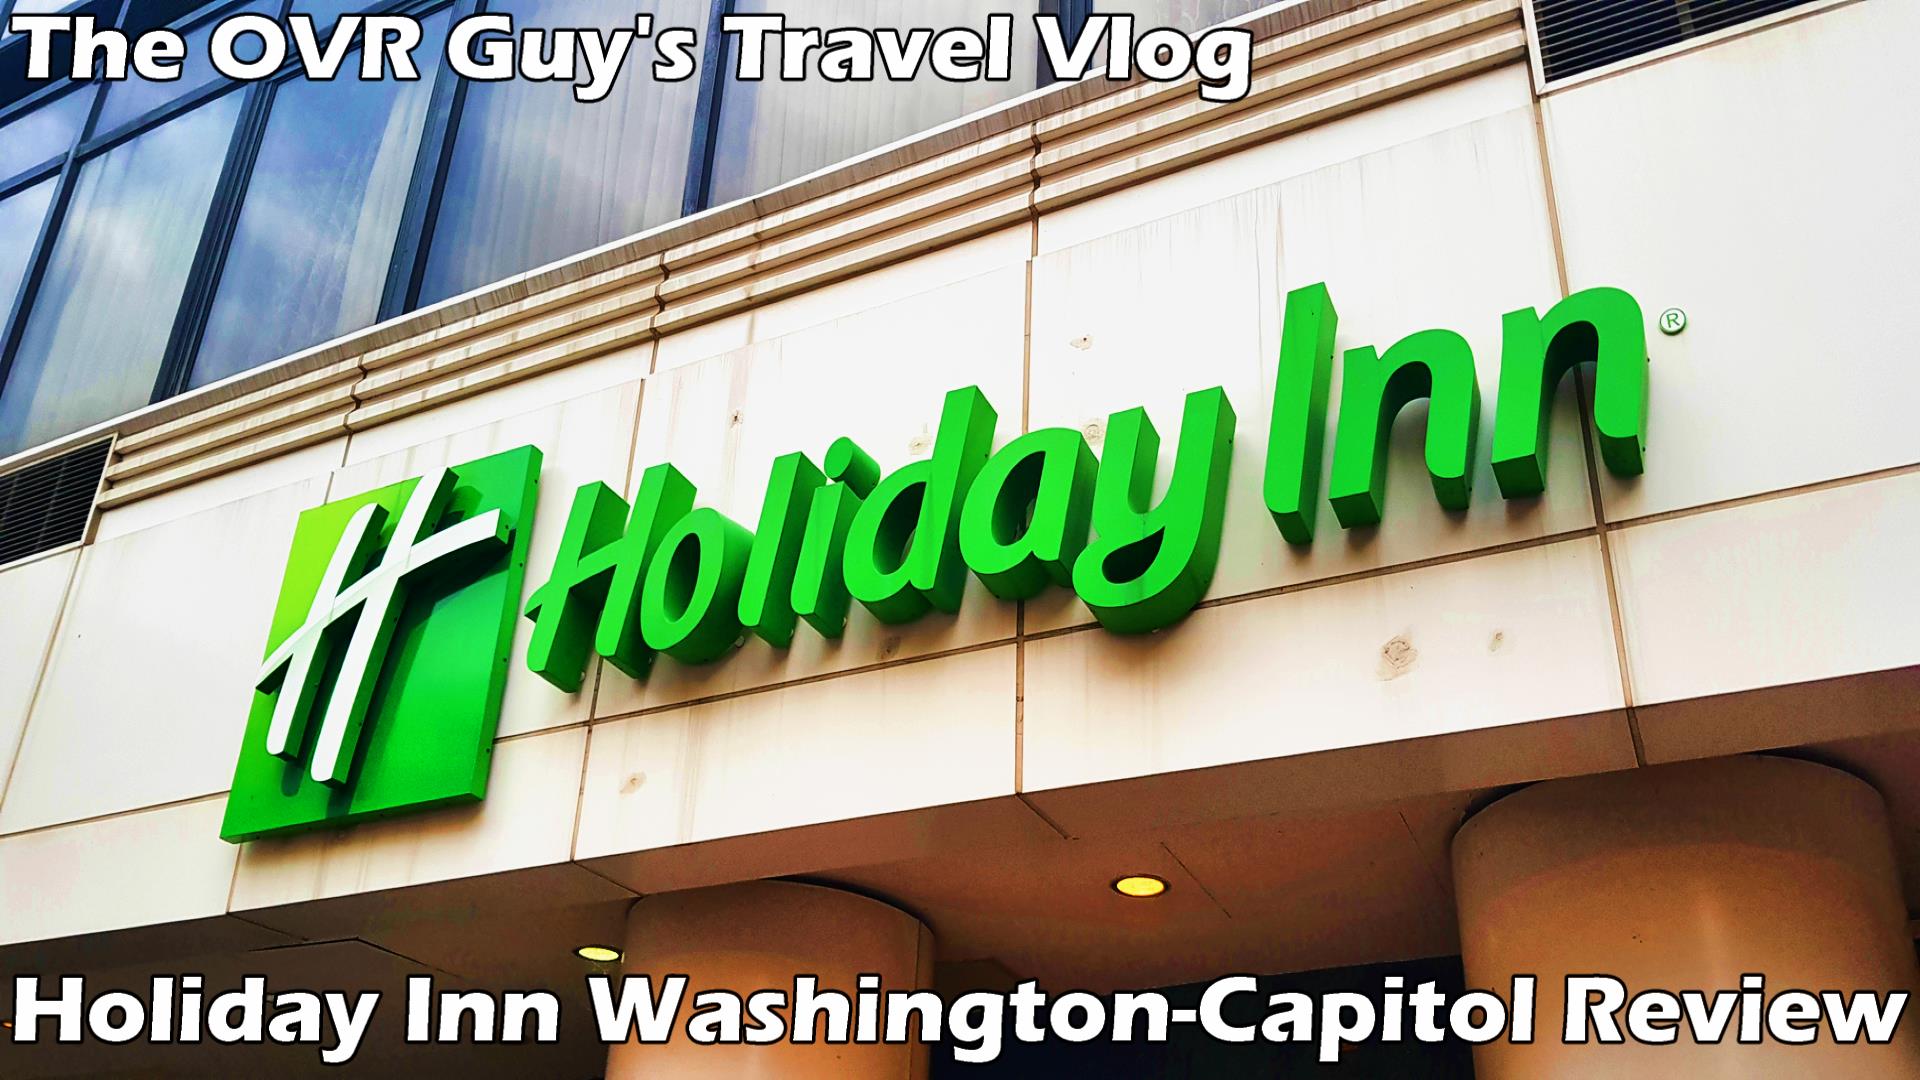 Holiday Inn Washington-Capitol Review (Thumbnail)